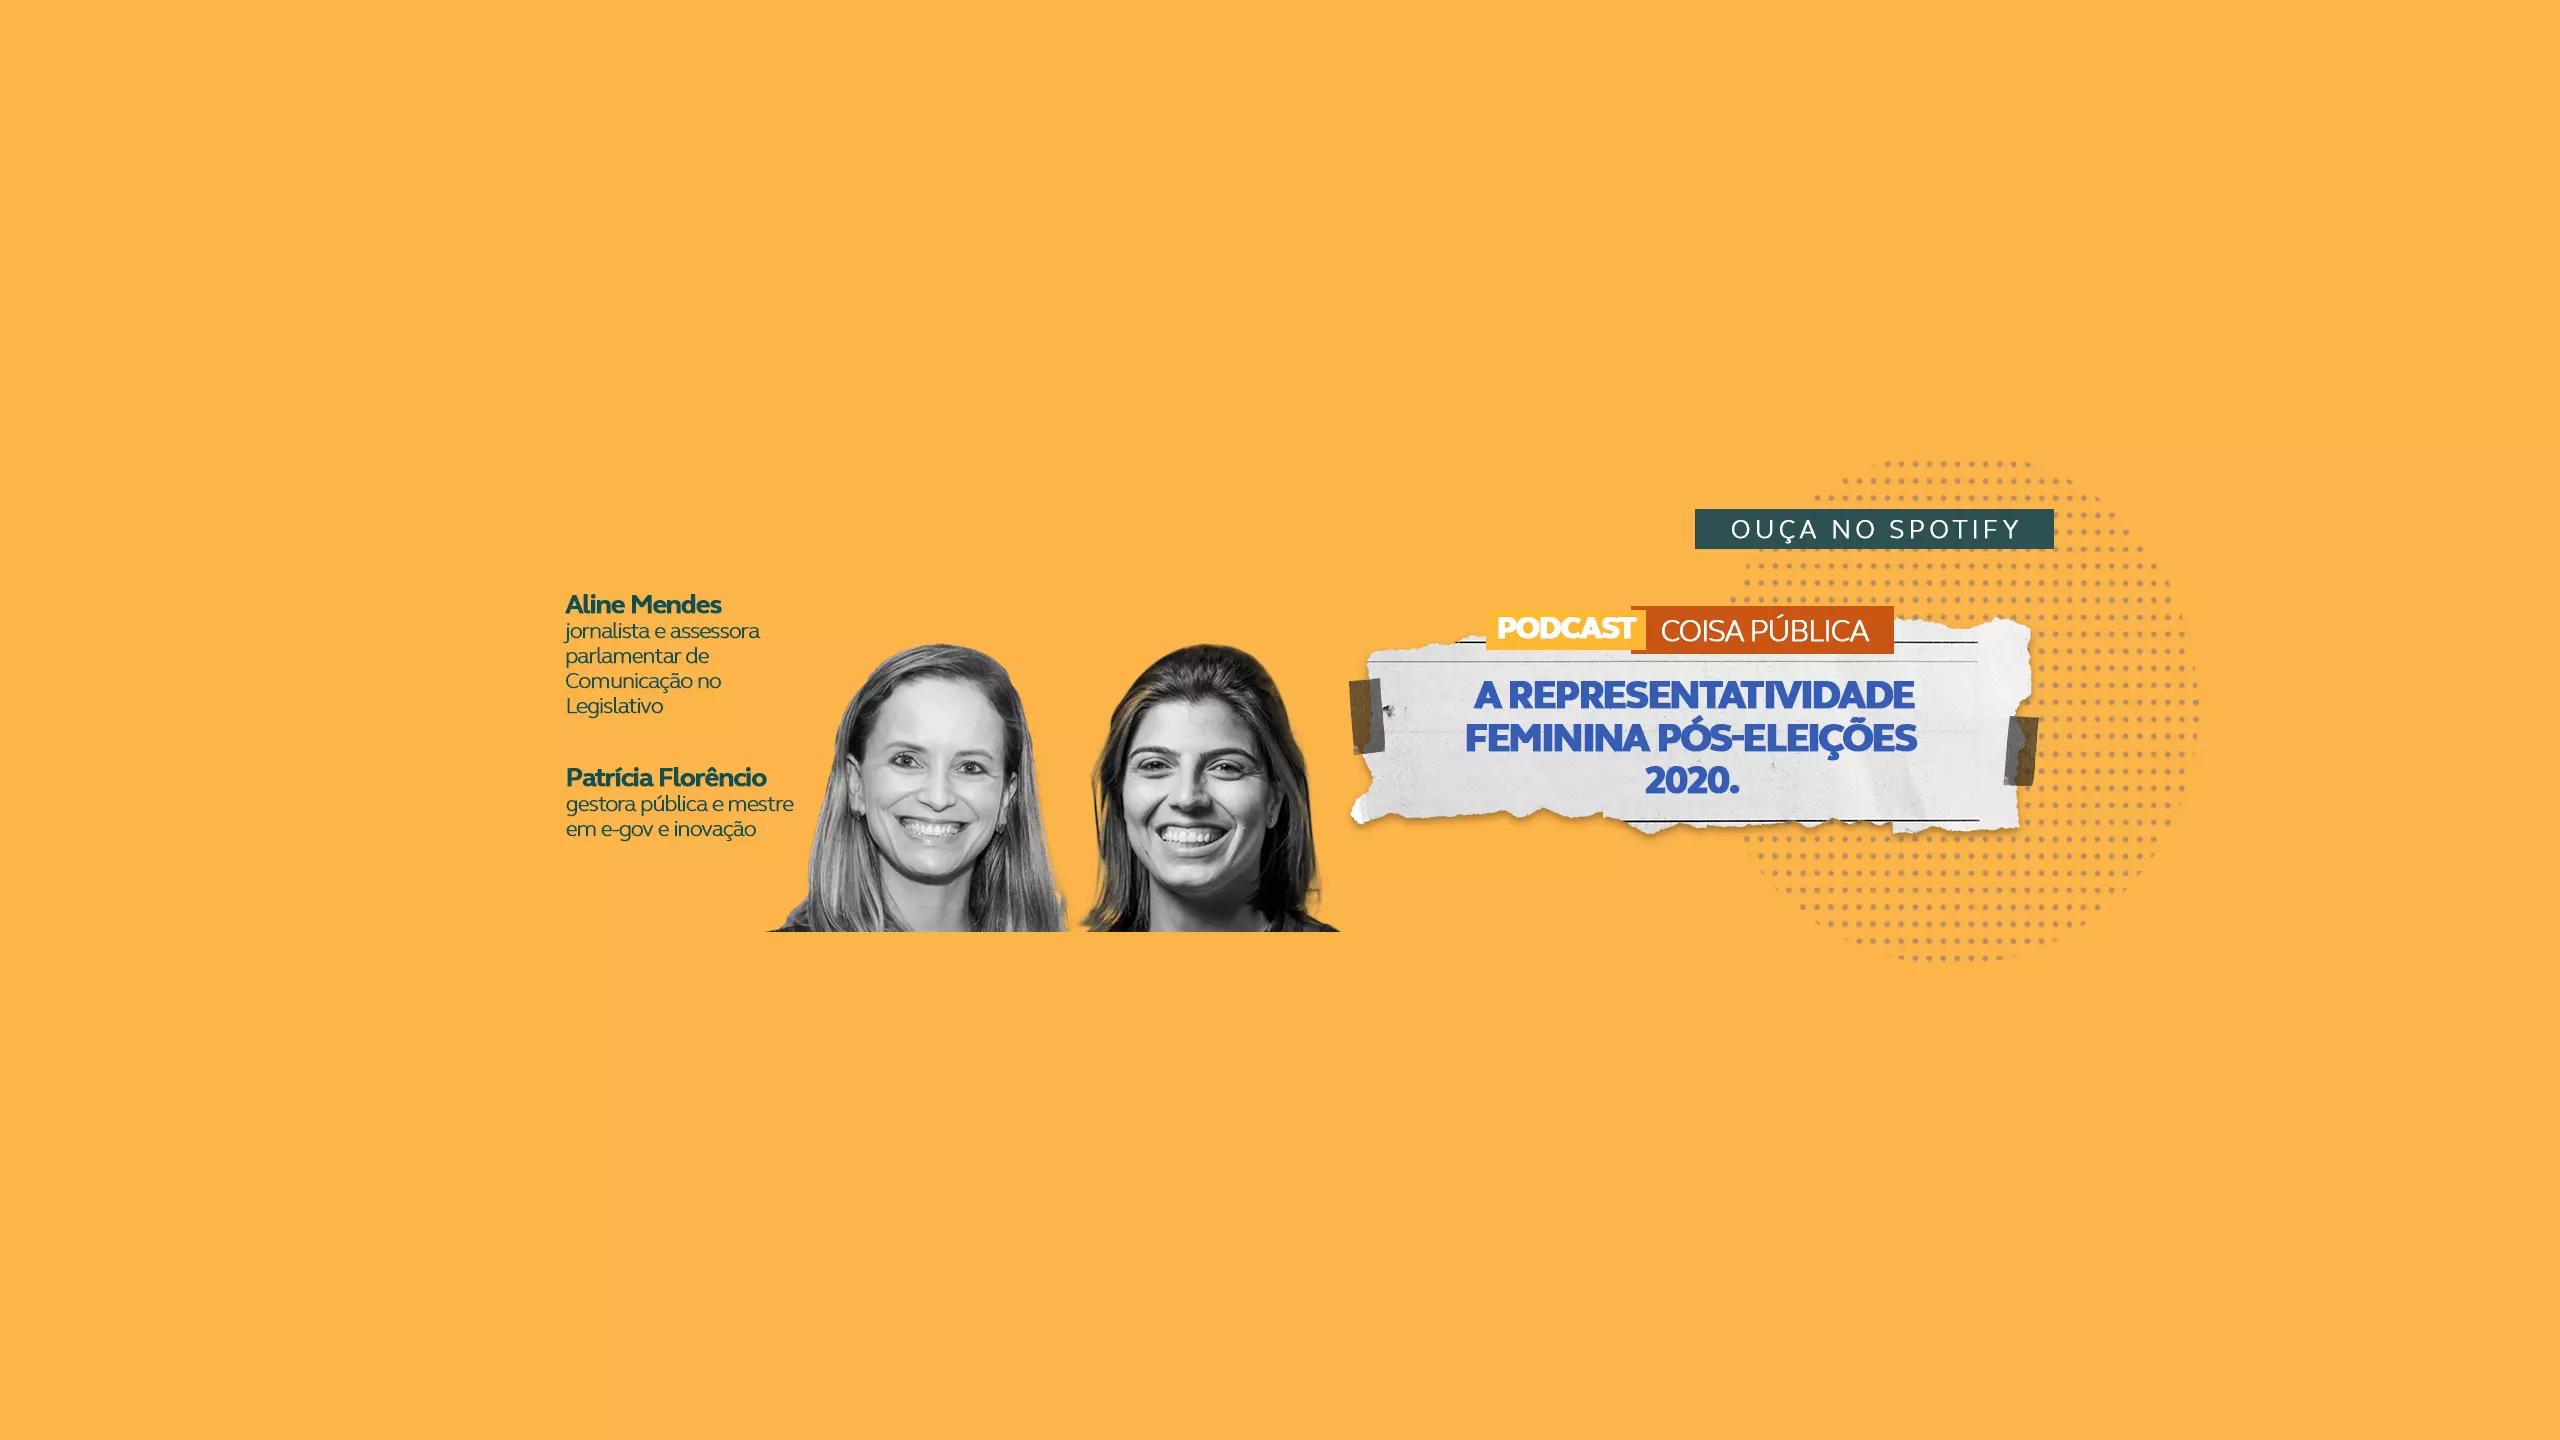 Podcast Coisa Pública: A representatividade feminina pós-eleições 2020